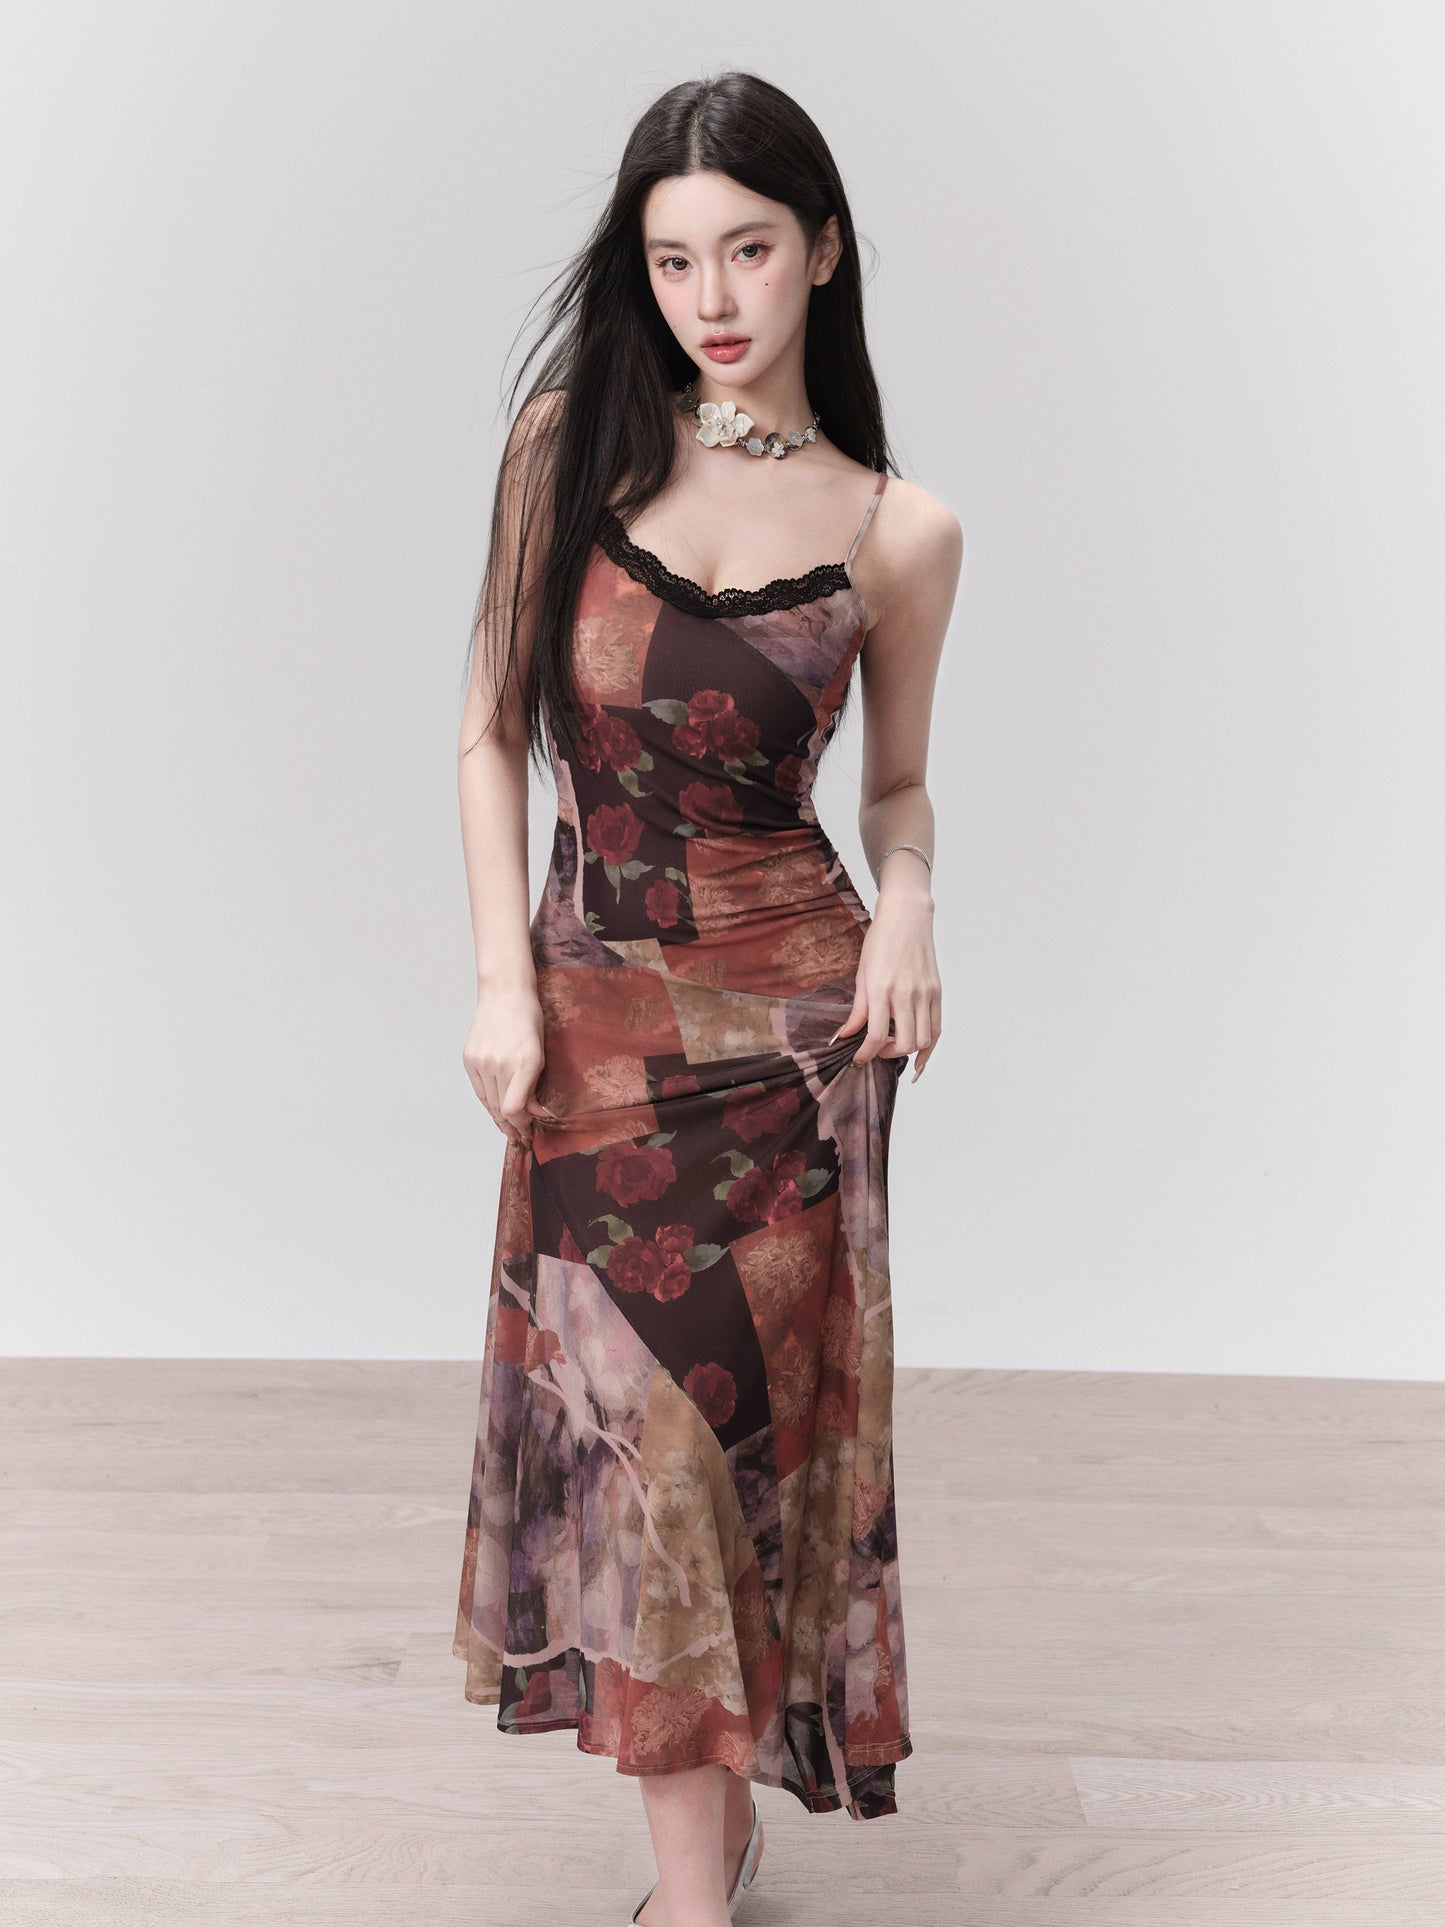 [Spot] Fragile Shop Retro Flowers Romantic Rose Print Sundress Irregular Seaside Resort Dress